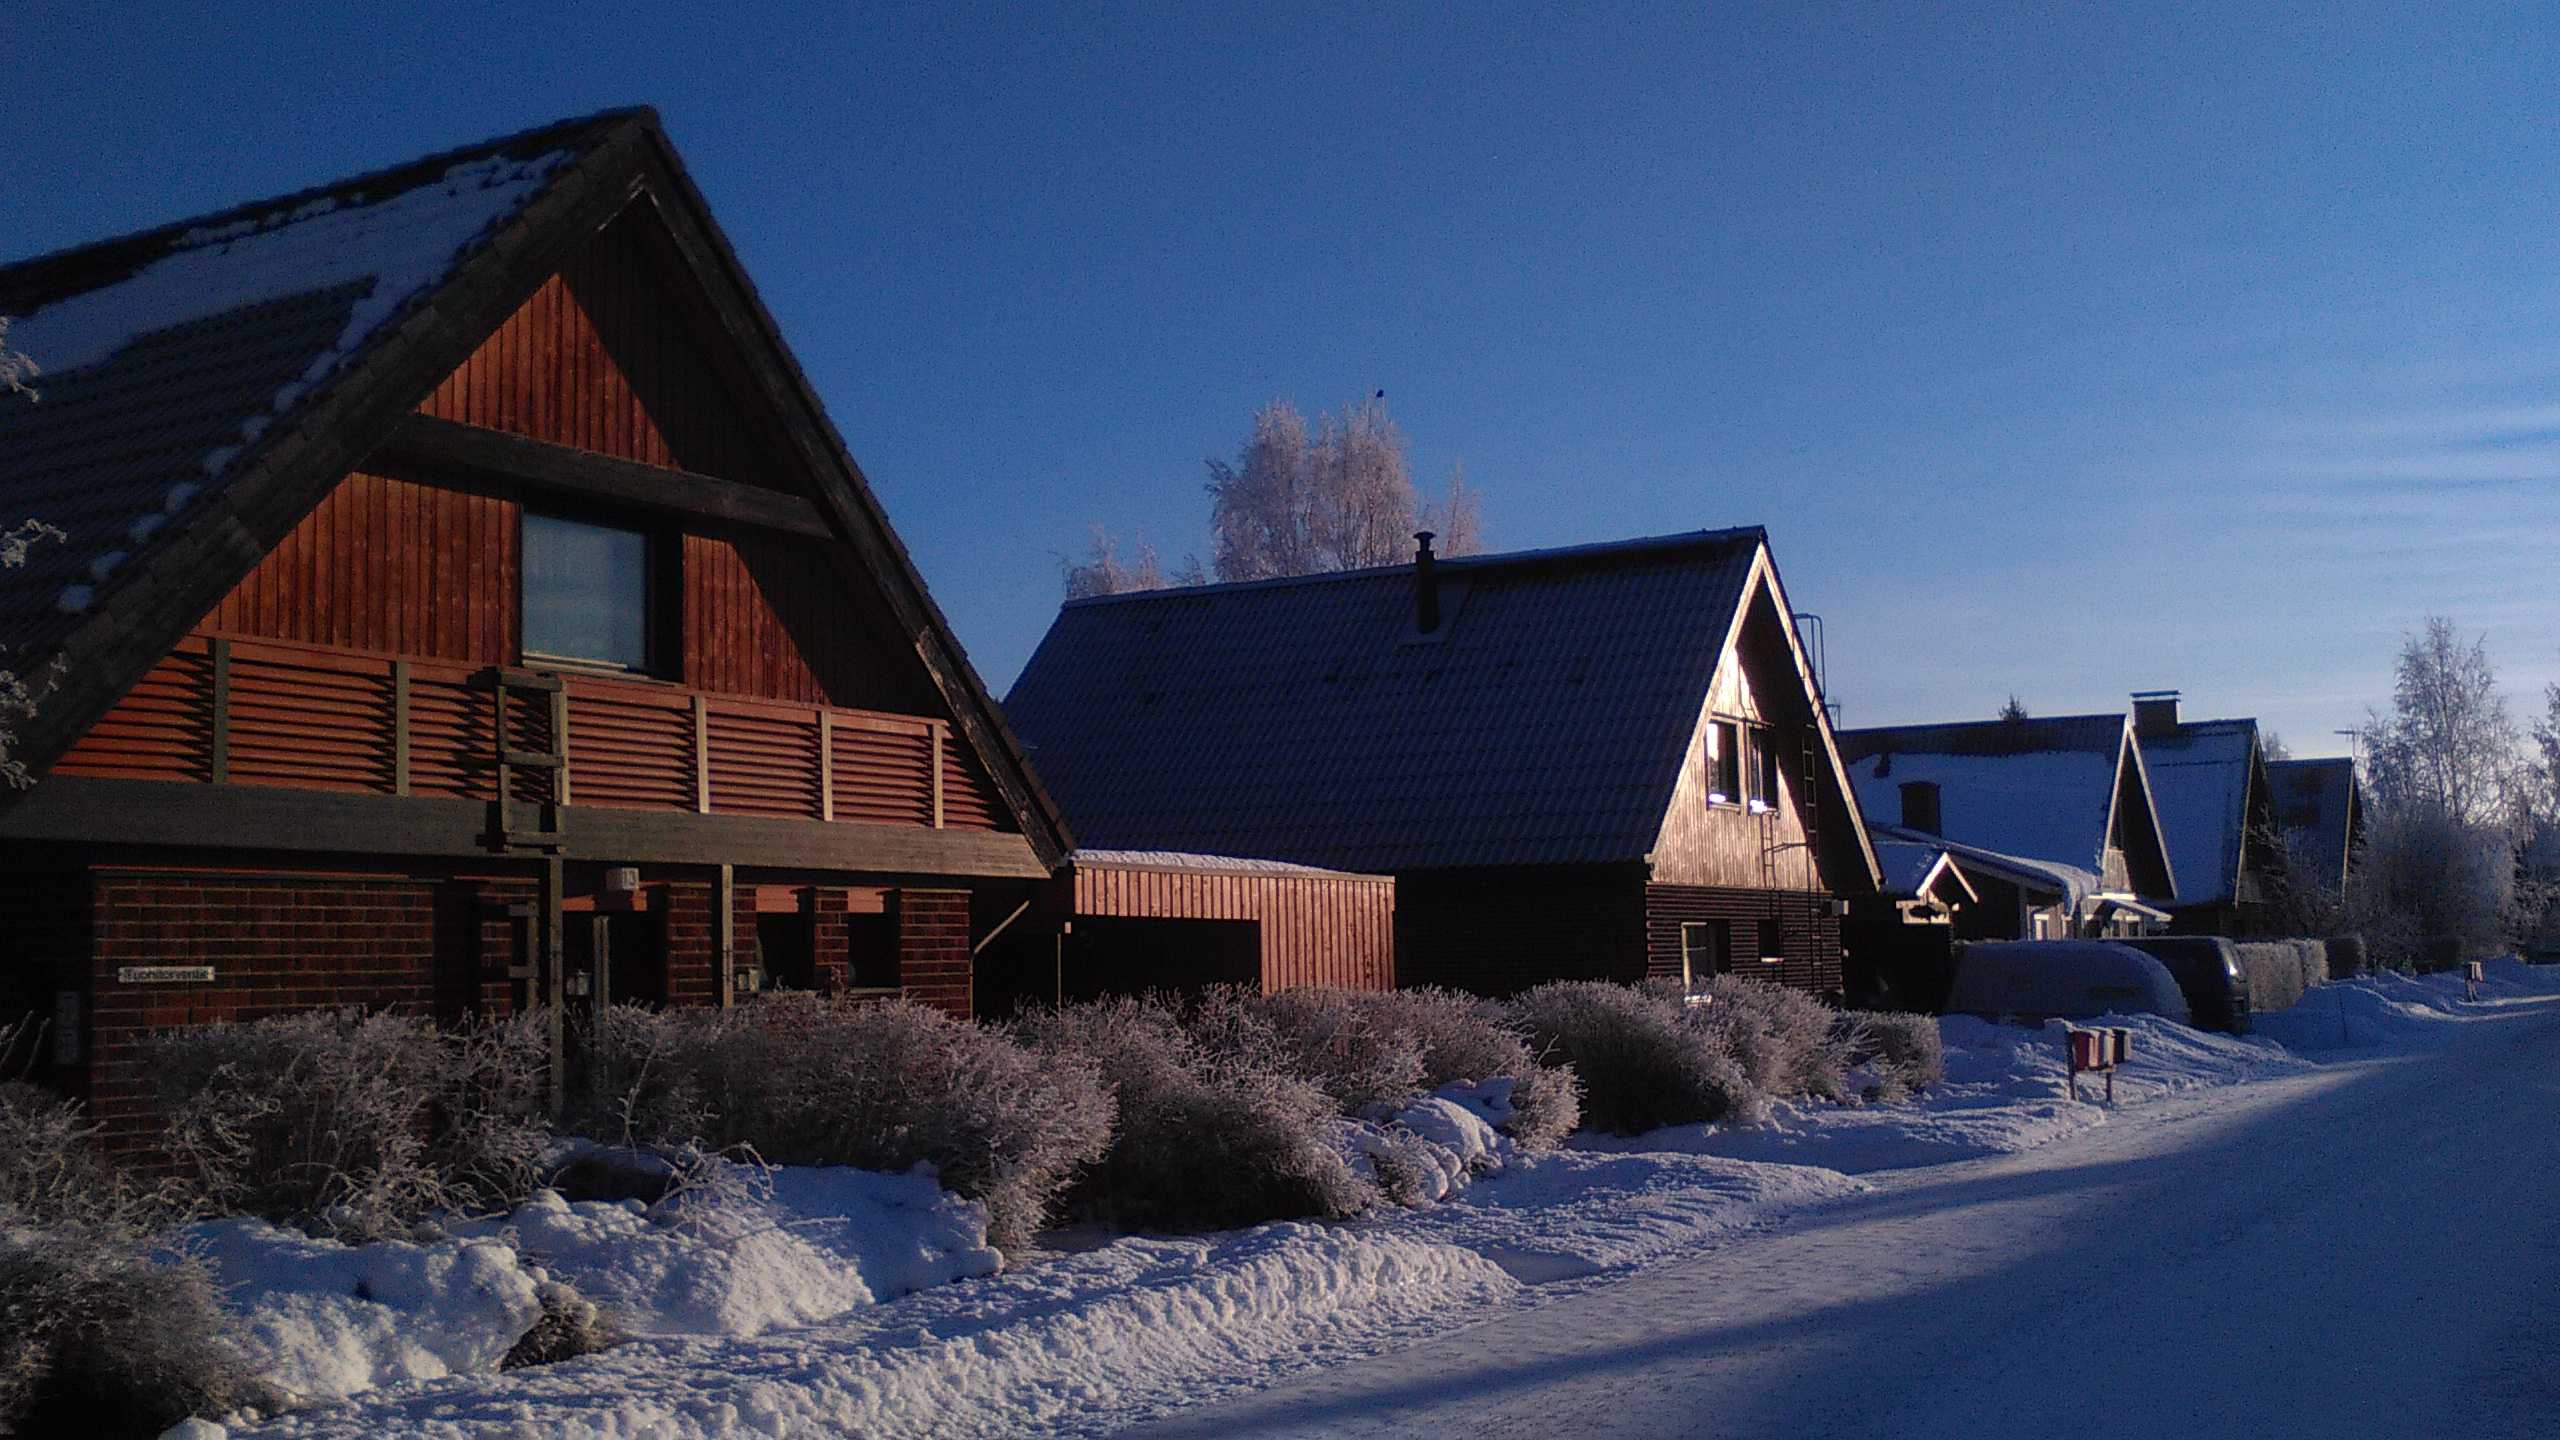 我是在2015年冬天去芬兰的,6月的时候离开,主要是交流学习,课